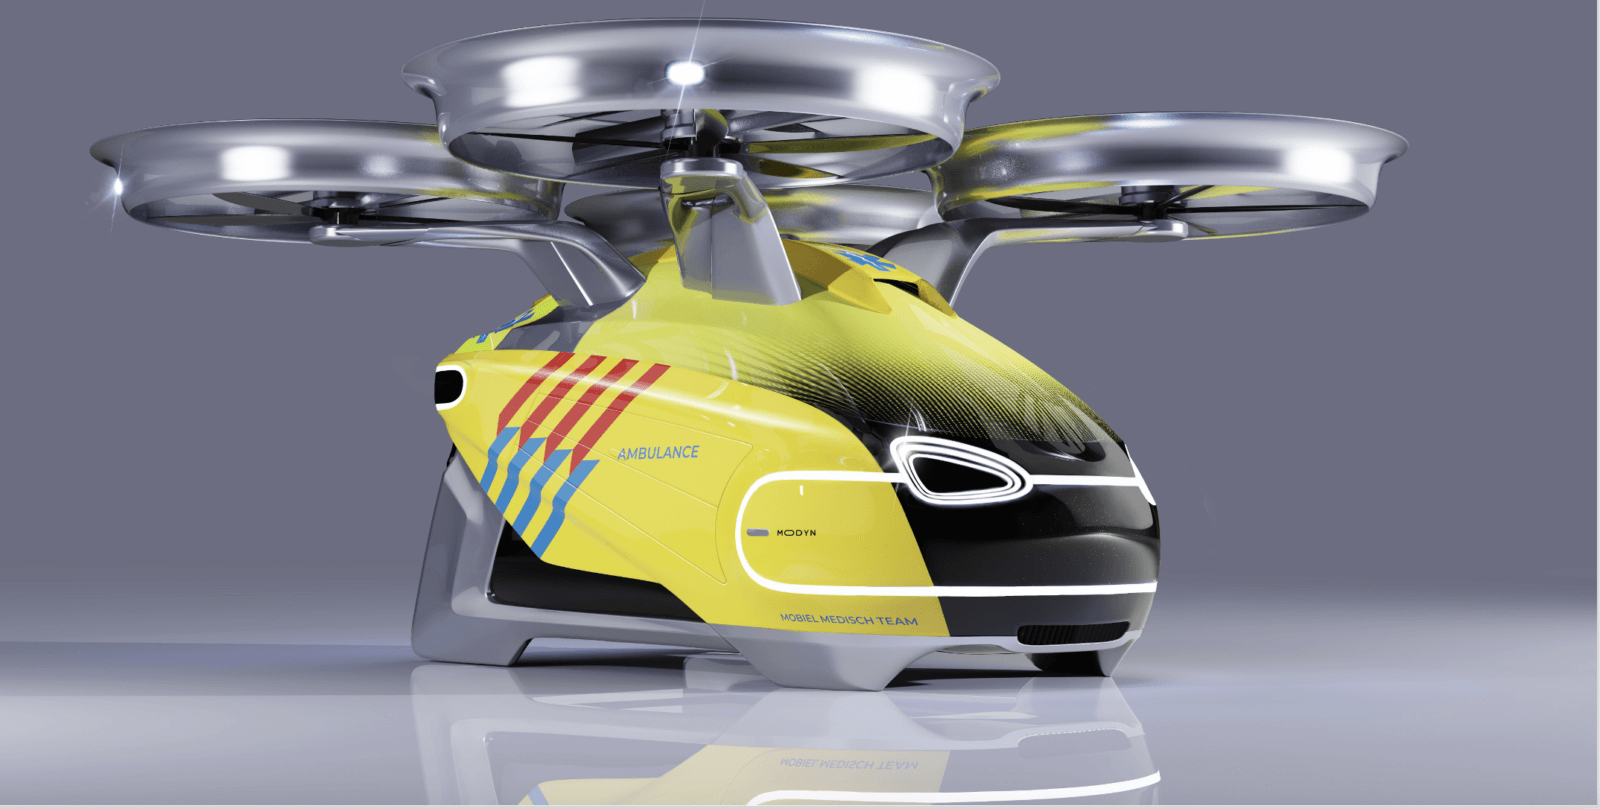 Our ambulance drone concept - Modyn